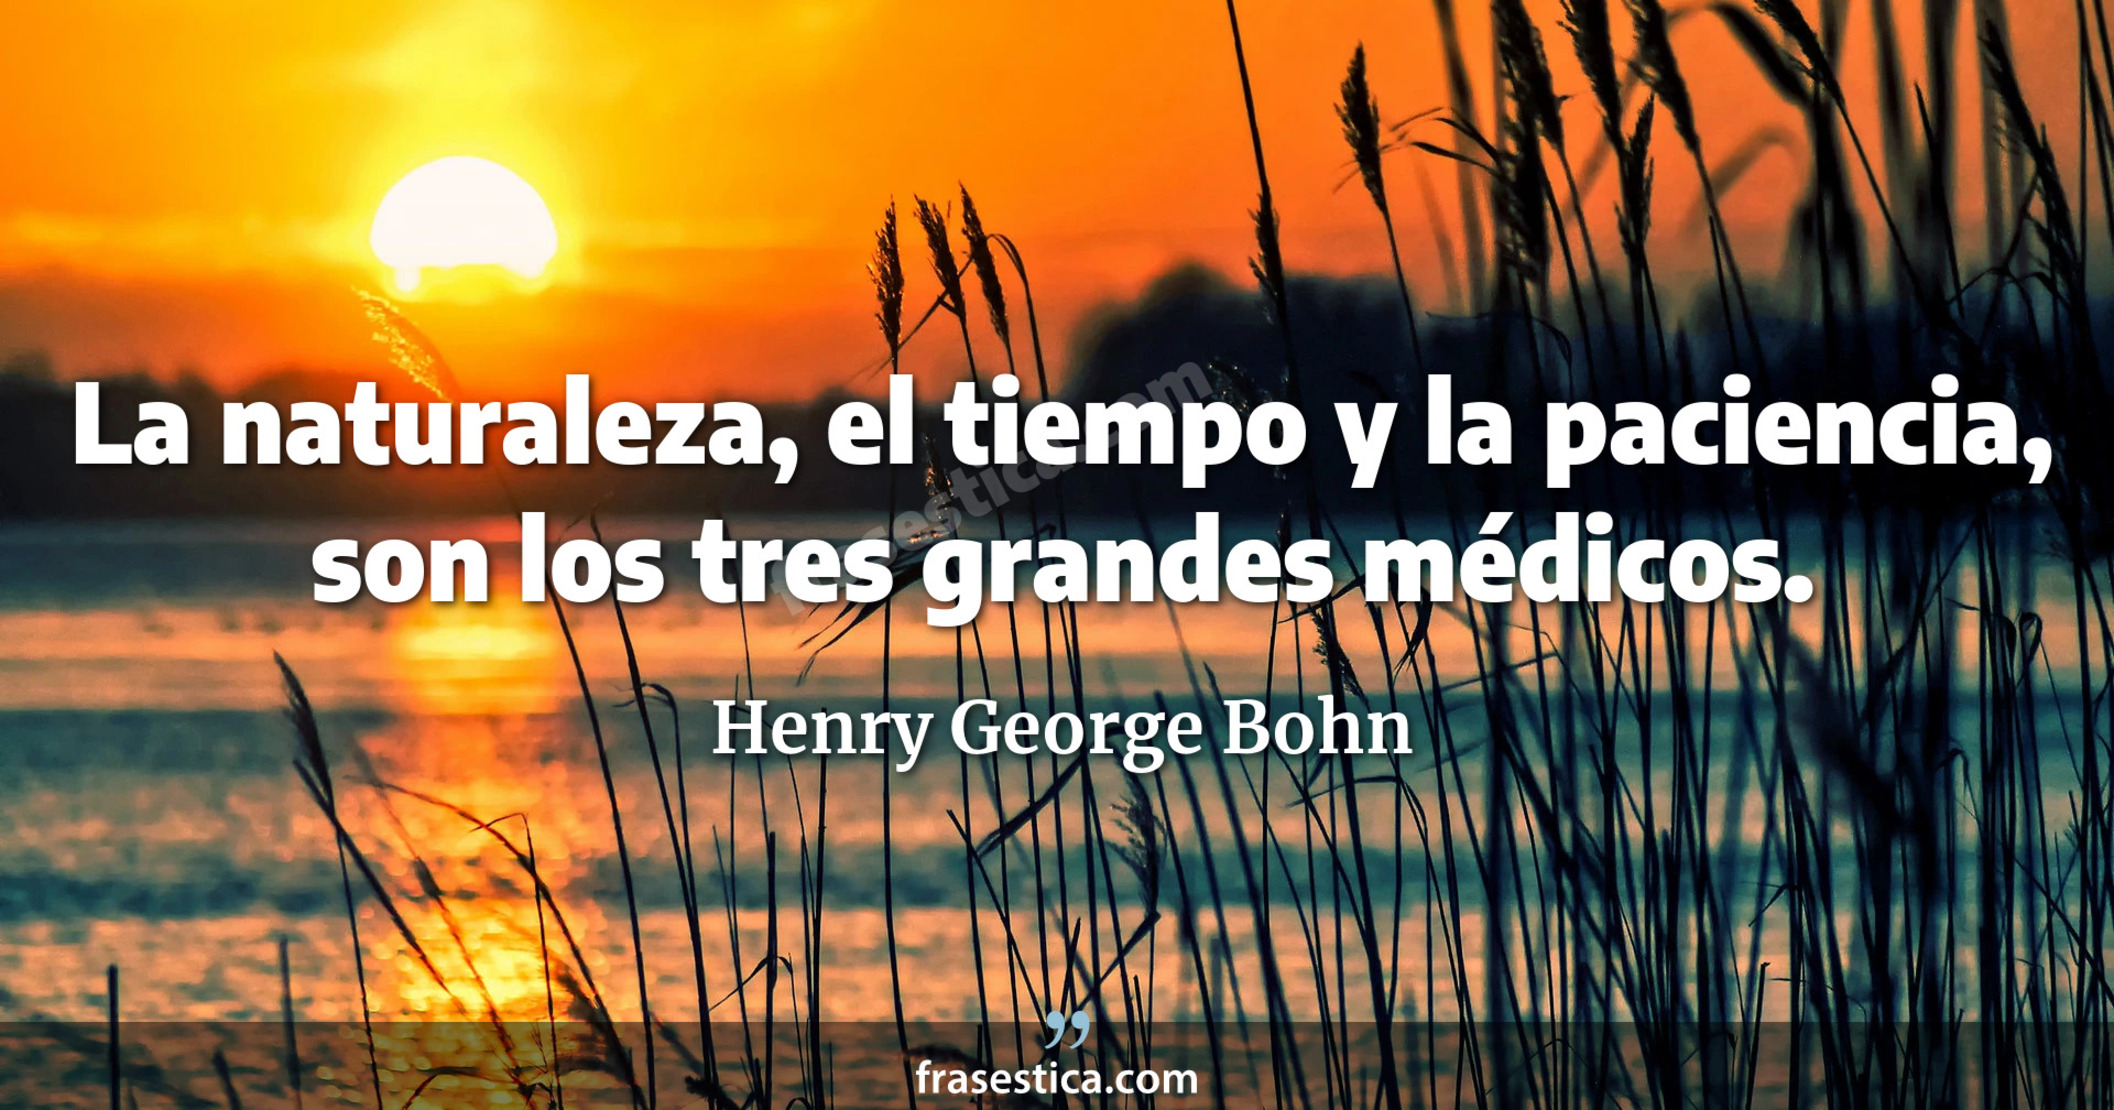 La naturaleza, el tiempo y la paciencia, son los tres grandes médicos. - Henry George Bohn